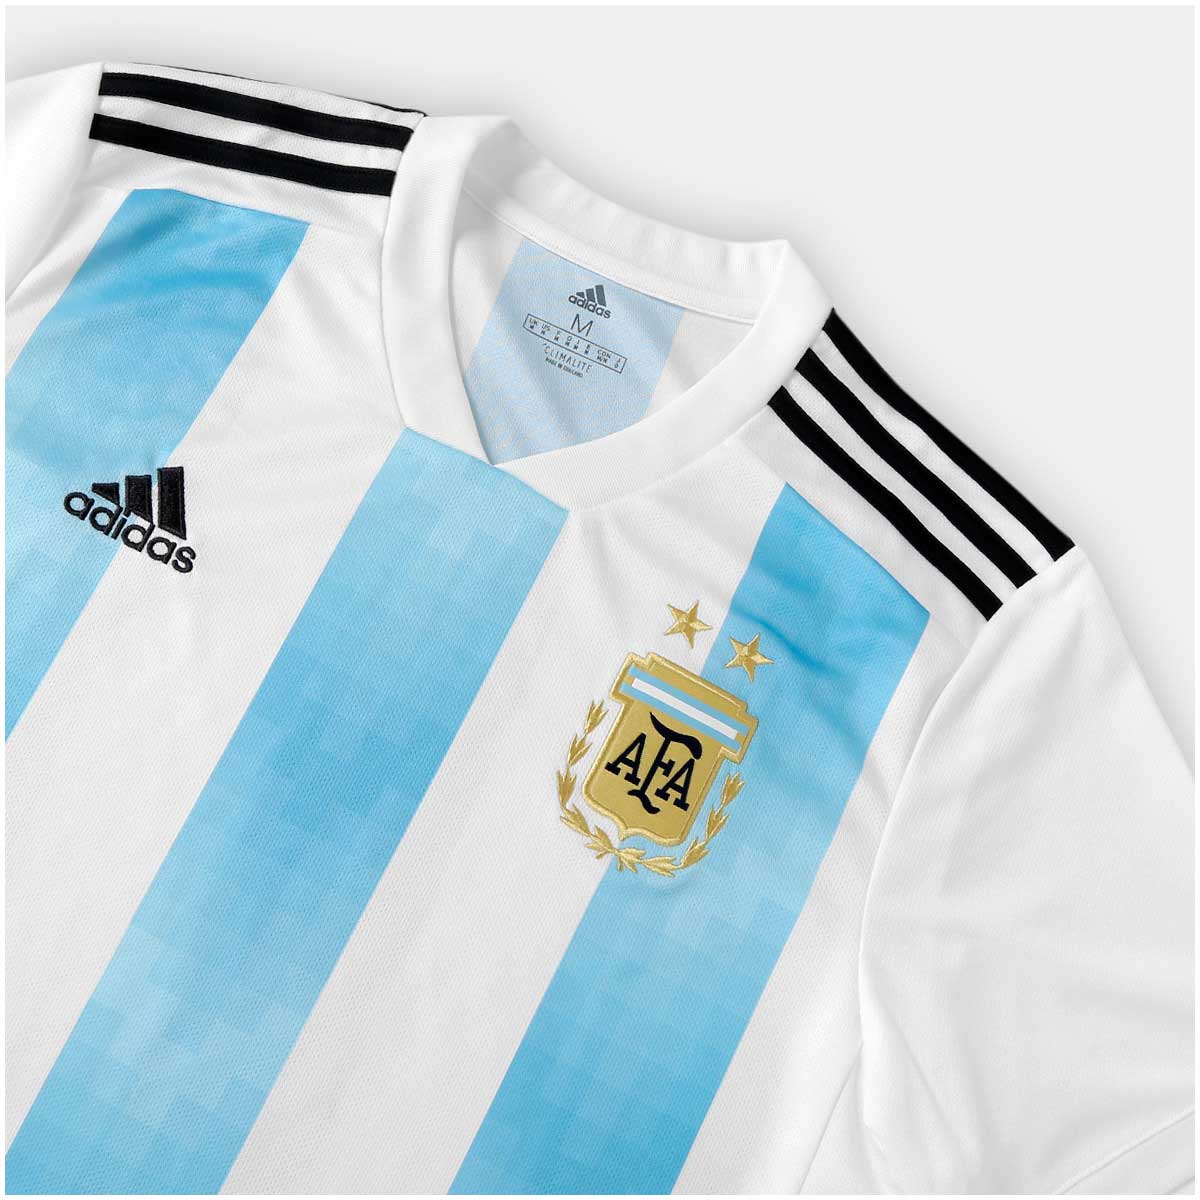 Camisa Argentina Home Adidas 2018 Infantil